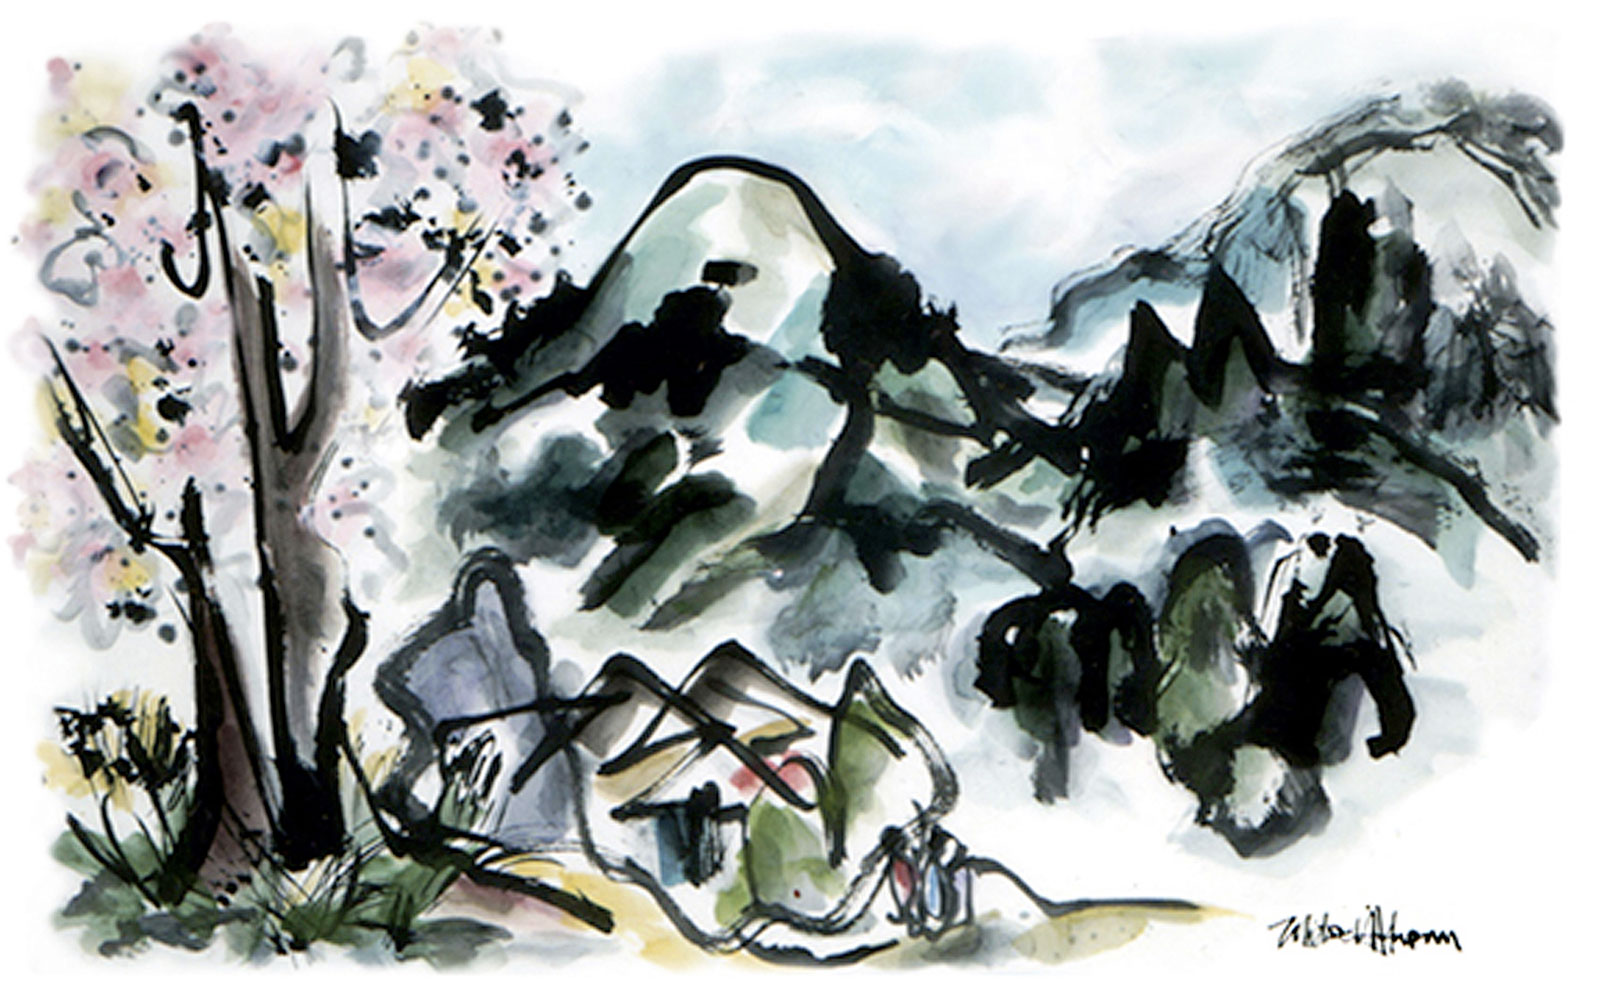 Mount Hiei - Sumi-e Painting by Michael D. Hofmann